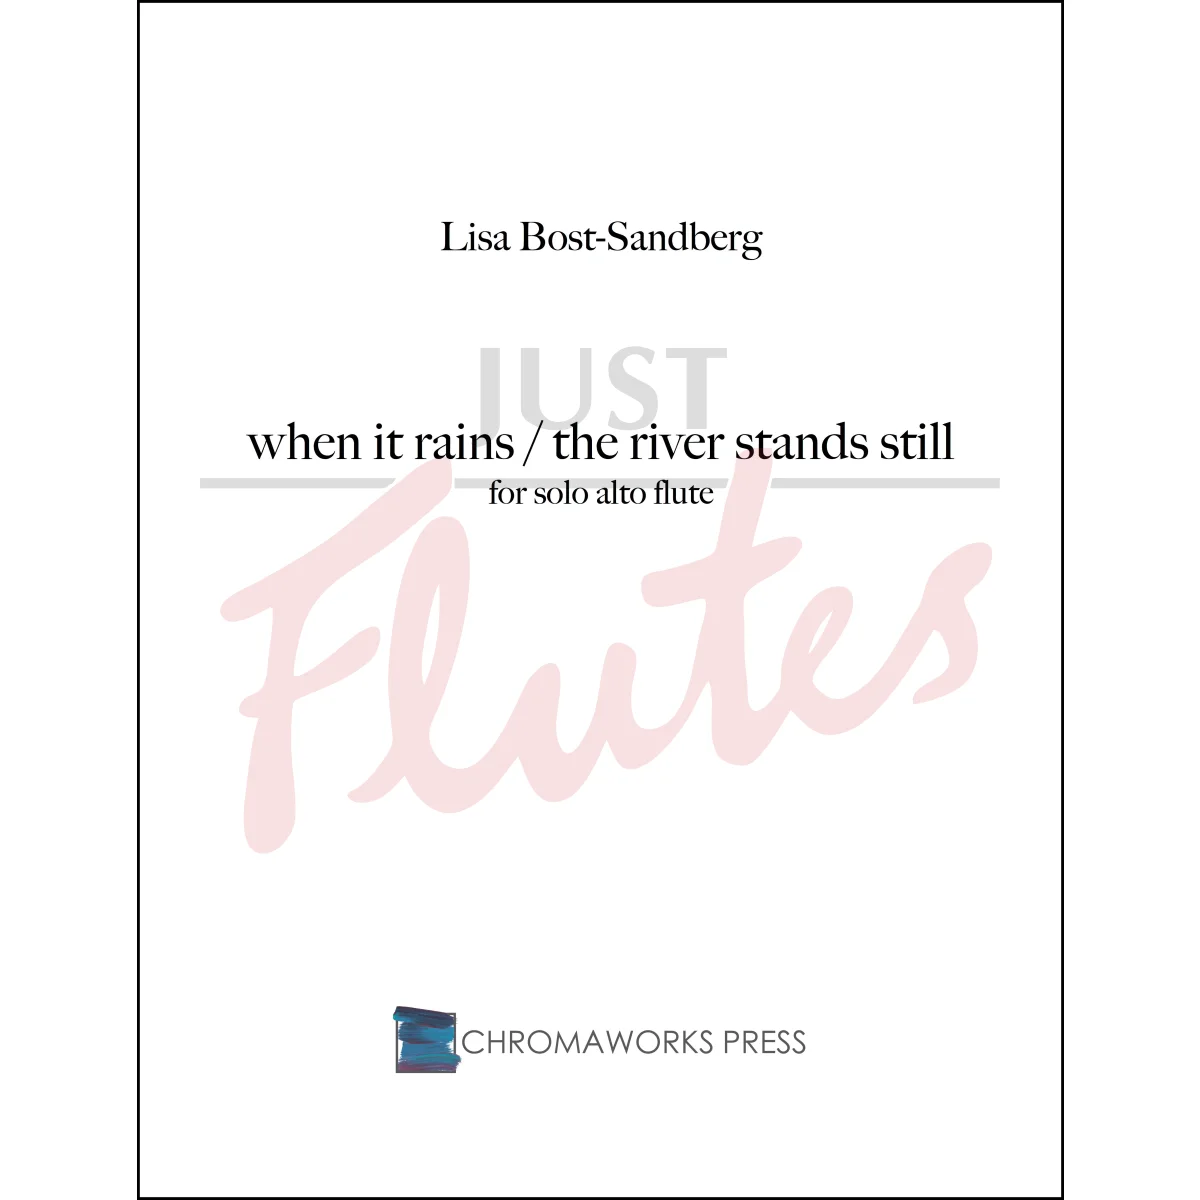 When It Rains / The River Stands Still for Solo Alto Flute